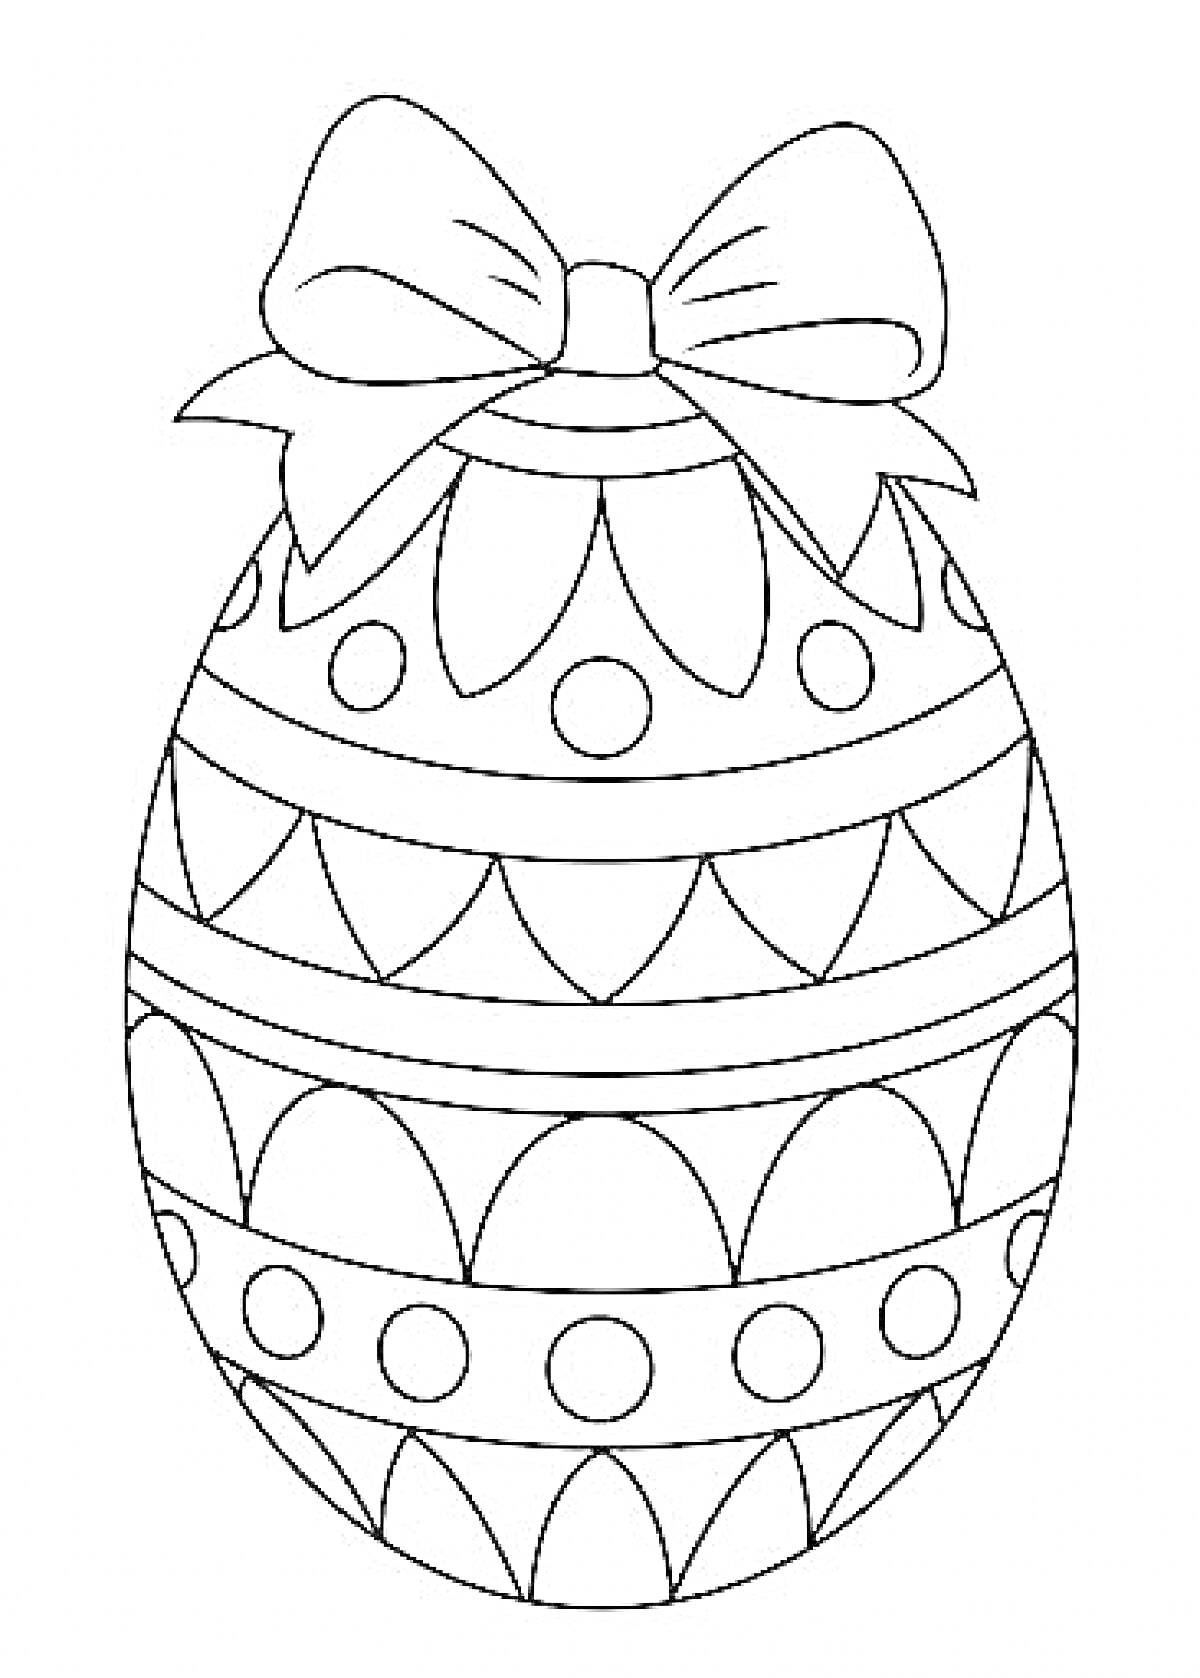 Пасхальное яйцо с бантом и узорами (волны, точки)